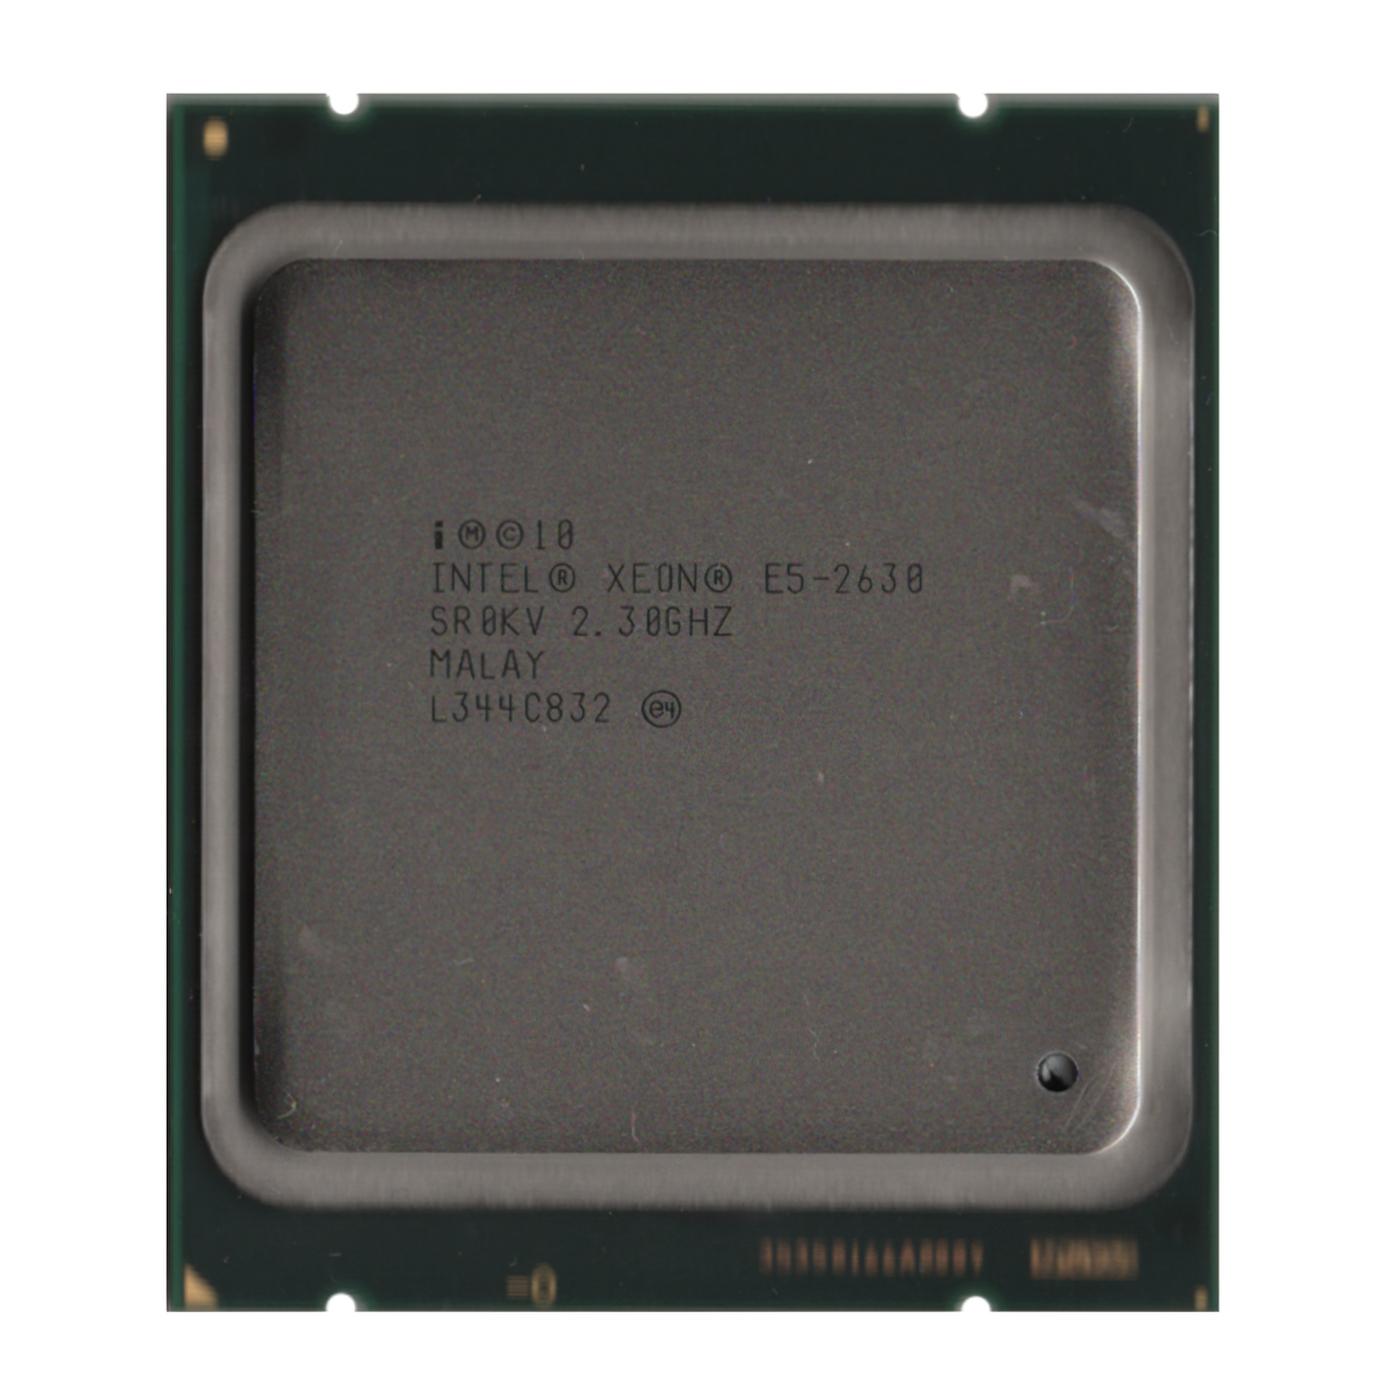 2.3GHz Intel Xeon E5-2630 CPU: 6 Cores, 12 Threads 